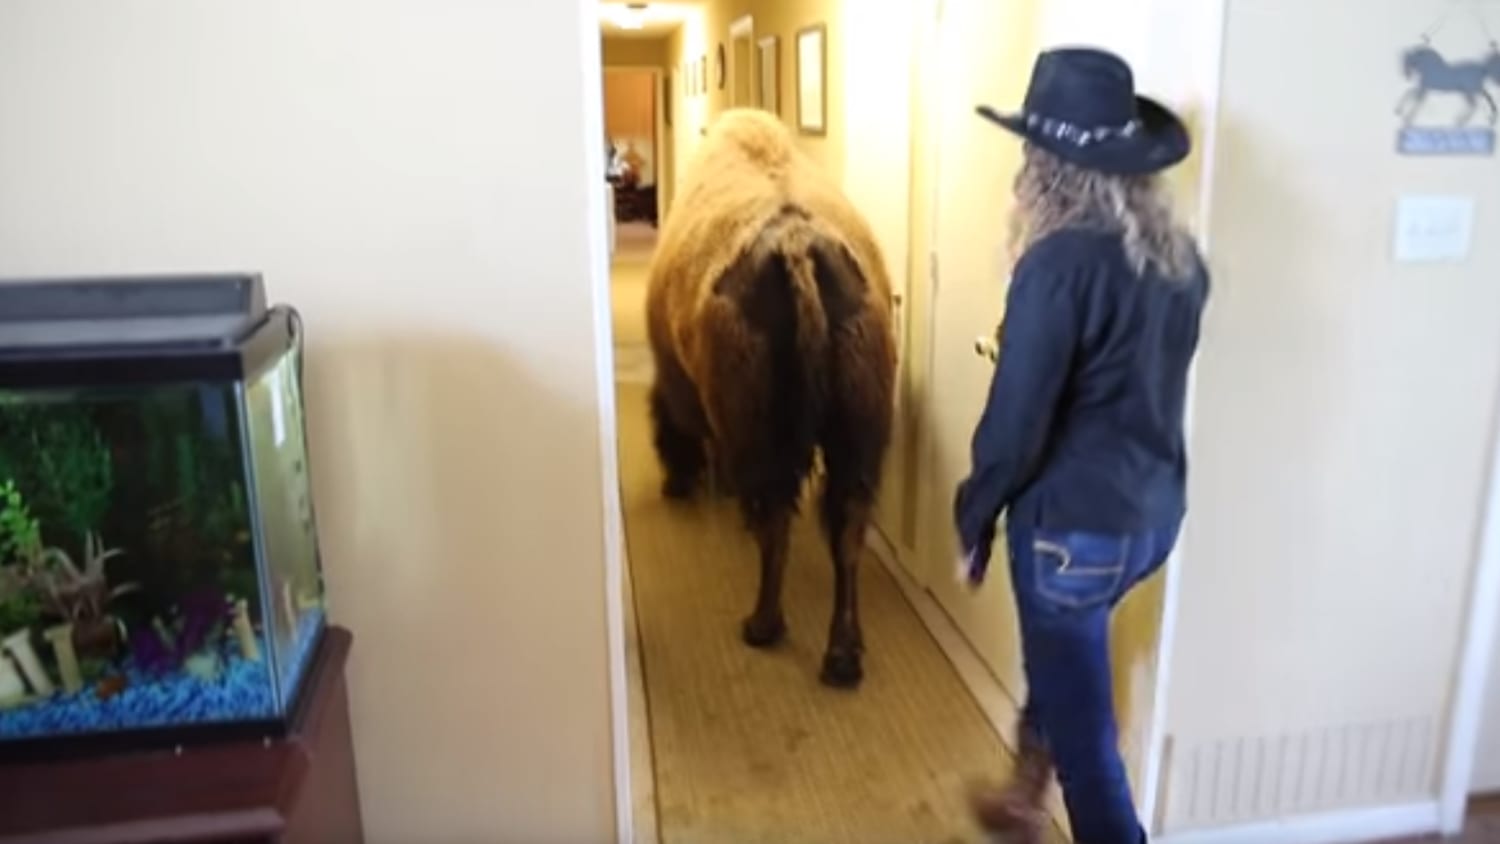 Sold on Craigslist: Housebroken bison finds new home ...